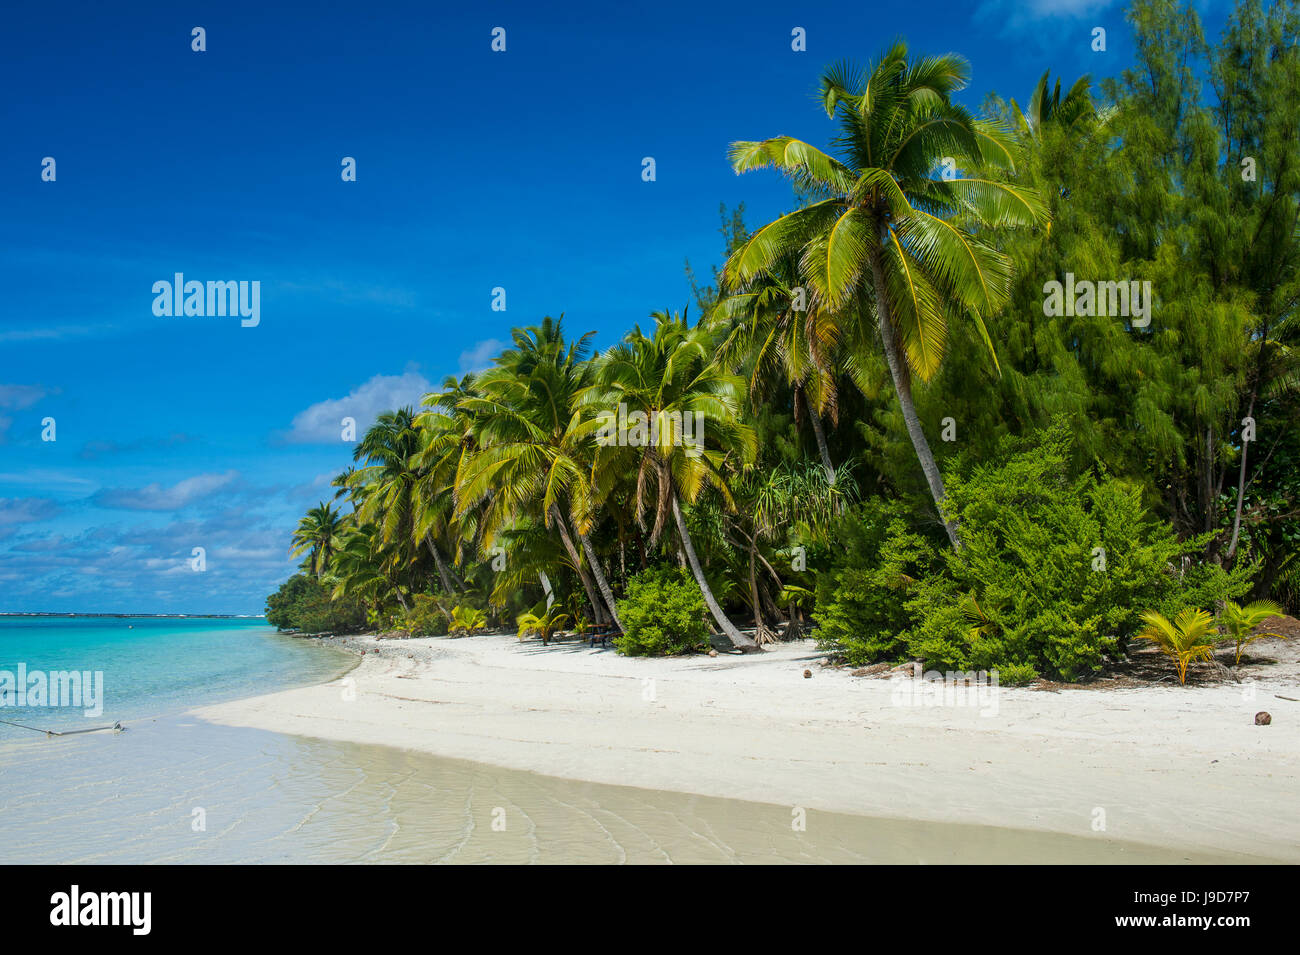 La sabbia bianca banca nelle acque turchesi della laguna Aitutaki, Rarotonga e le Isole Cook, South Pacific Pacific Foto Stock